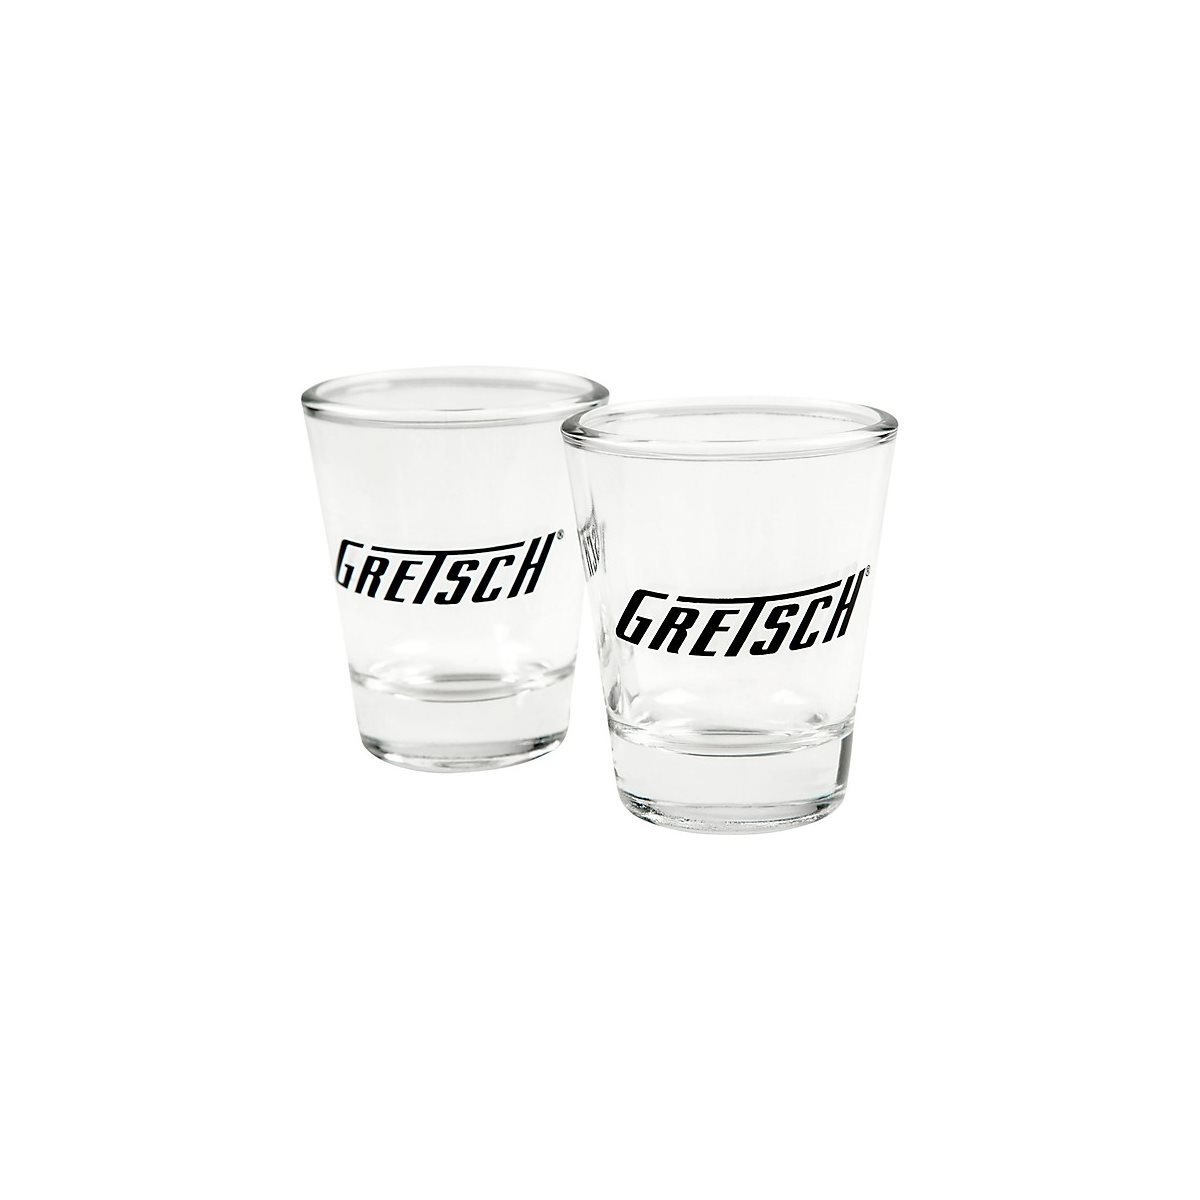 GRETSCH - SHOT GLASS SET